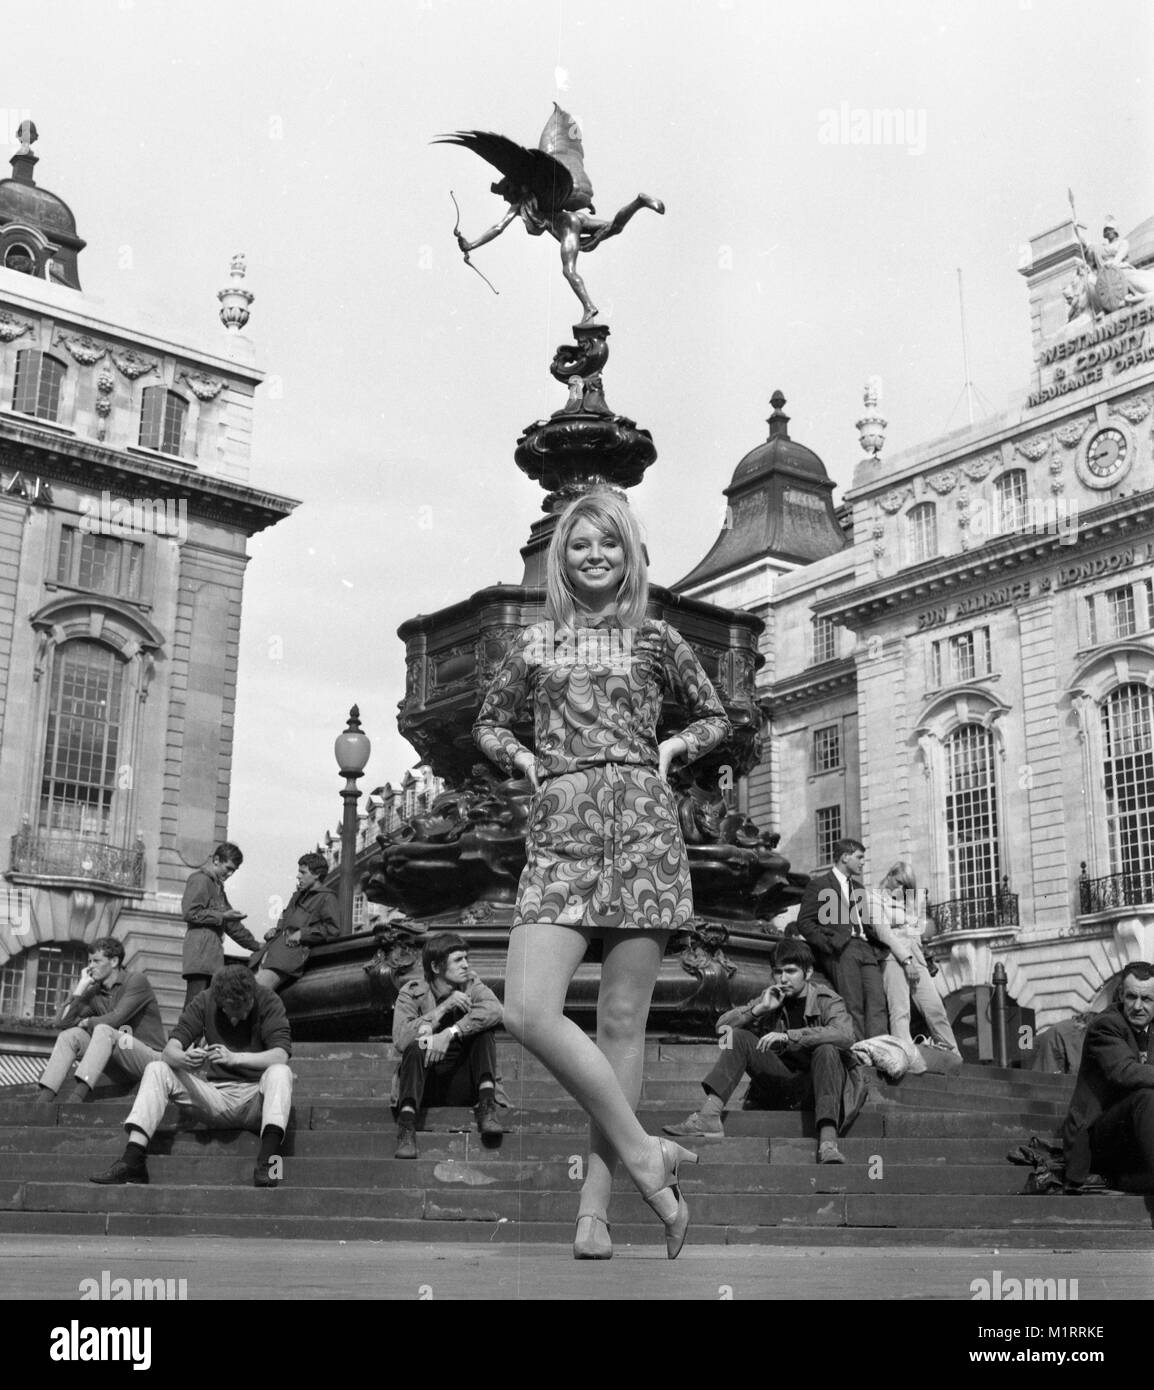 Un modèle pose dans une robe à l'extérieur de Londres Piccadilly, près de la statue d'Eros en vers 1968, portant une robe colorée. Photo par Tony Henshaw Banque D'Images